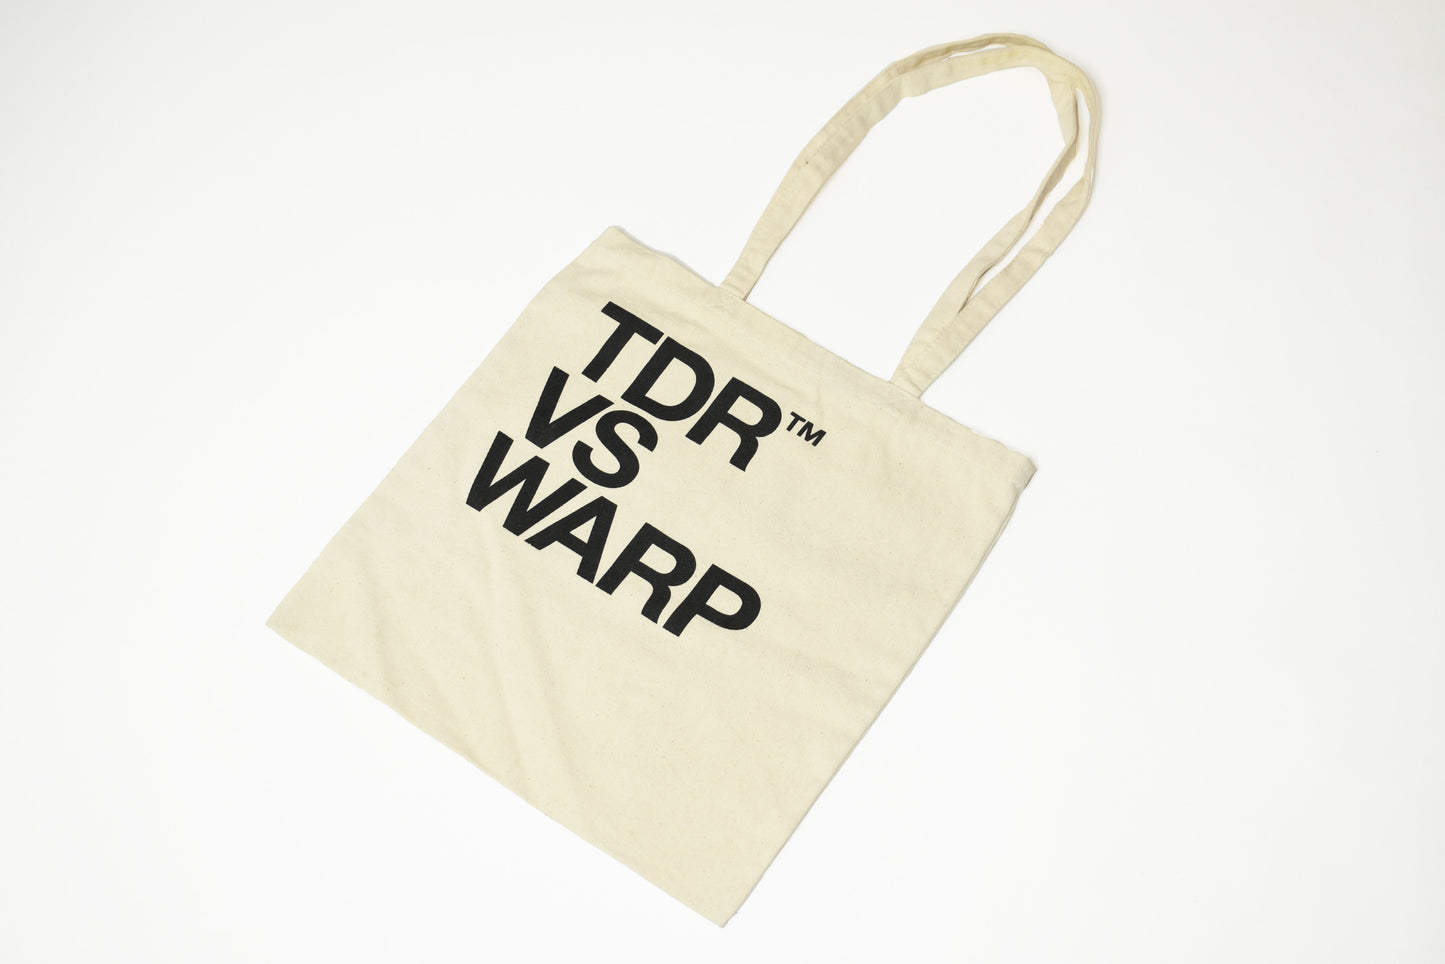 TDR vs Warp Glitch - Tote